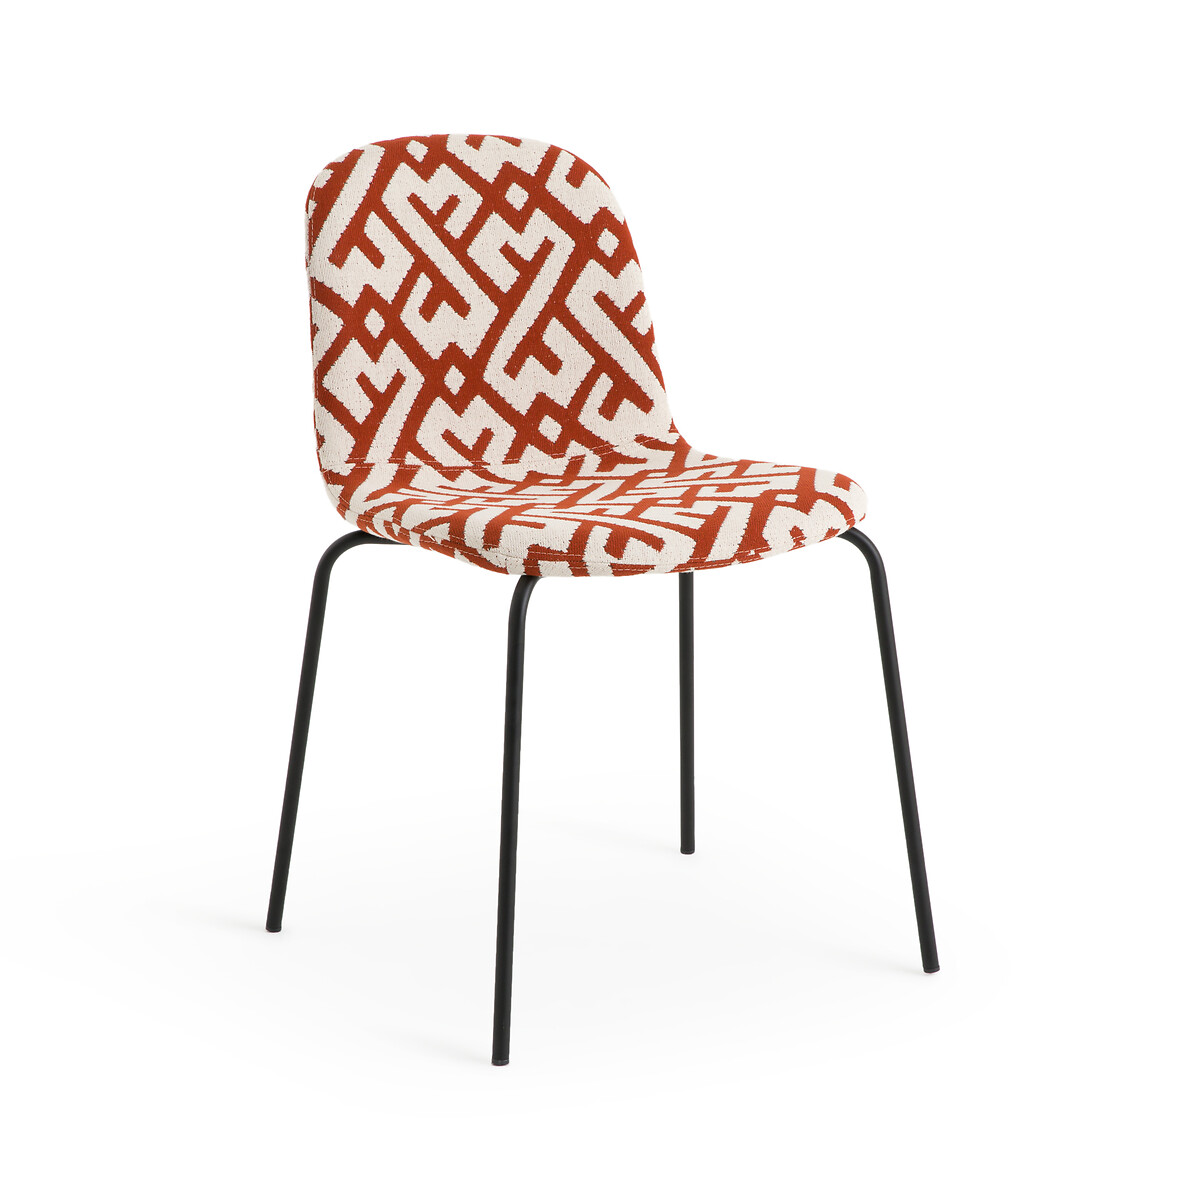 Стул из жаккардовой ткани Tibby единый размер оранжевый стул из велюра с опалинами tibby единый размер серый